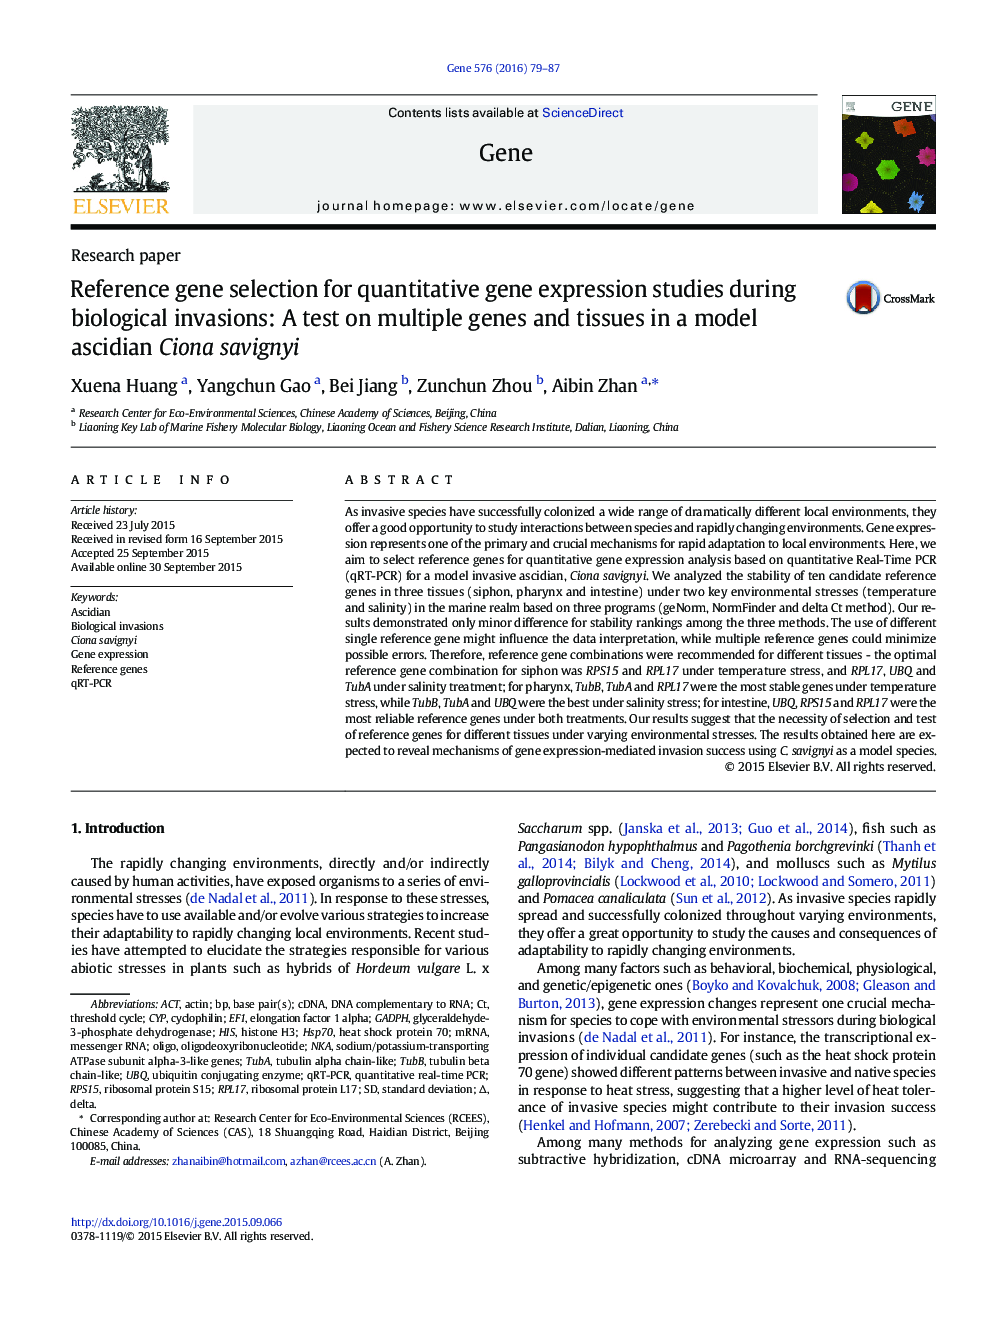 انتخاب ژن مرجع برای مطالعات کمی بیان ژن در هنگام حمله های بیولوژیکی: آزمایش بر روی ژن ها و بافت های مختلف در یک مدل آسسییدان سیونا واجنین 